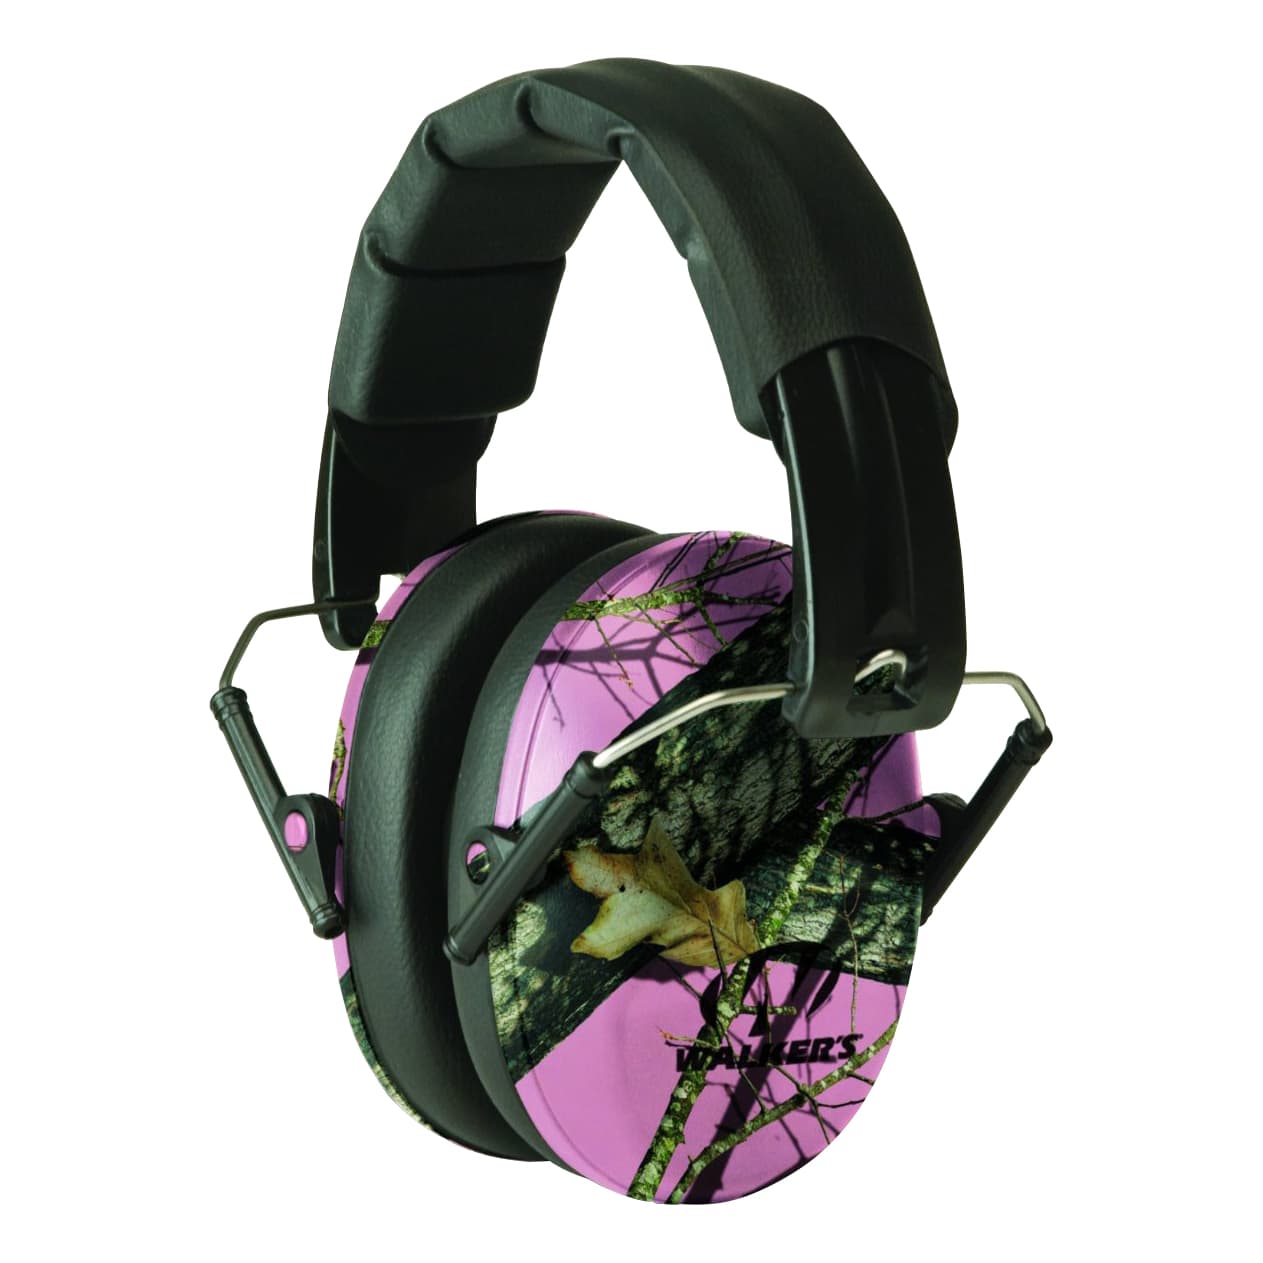 Walker's Game Ear® Pro Low-Profile Folding Muffs - Mossy Oak Break Up Pink